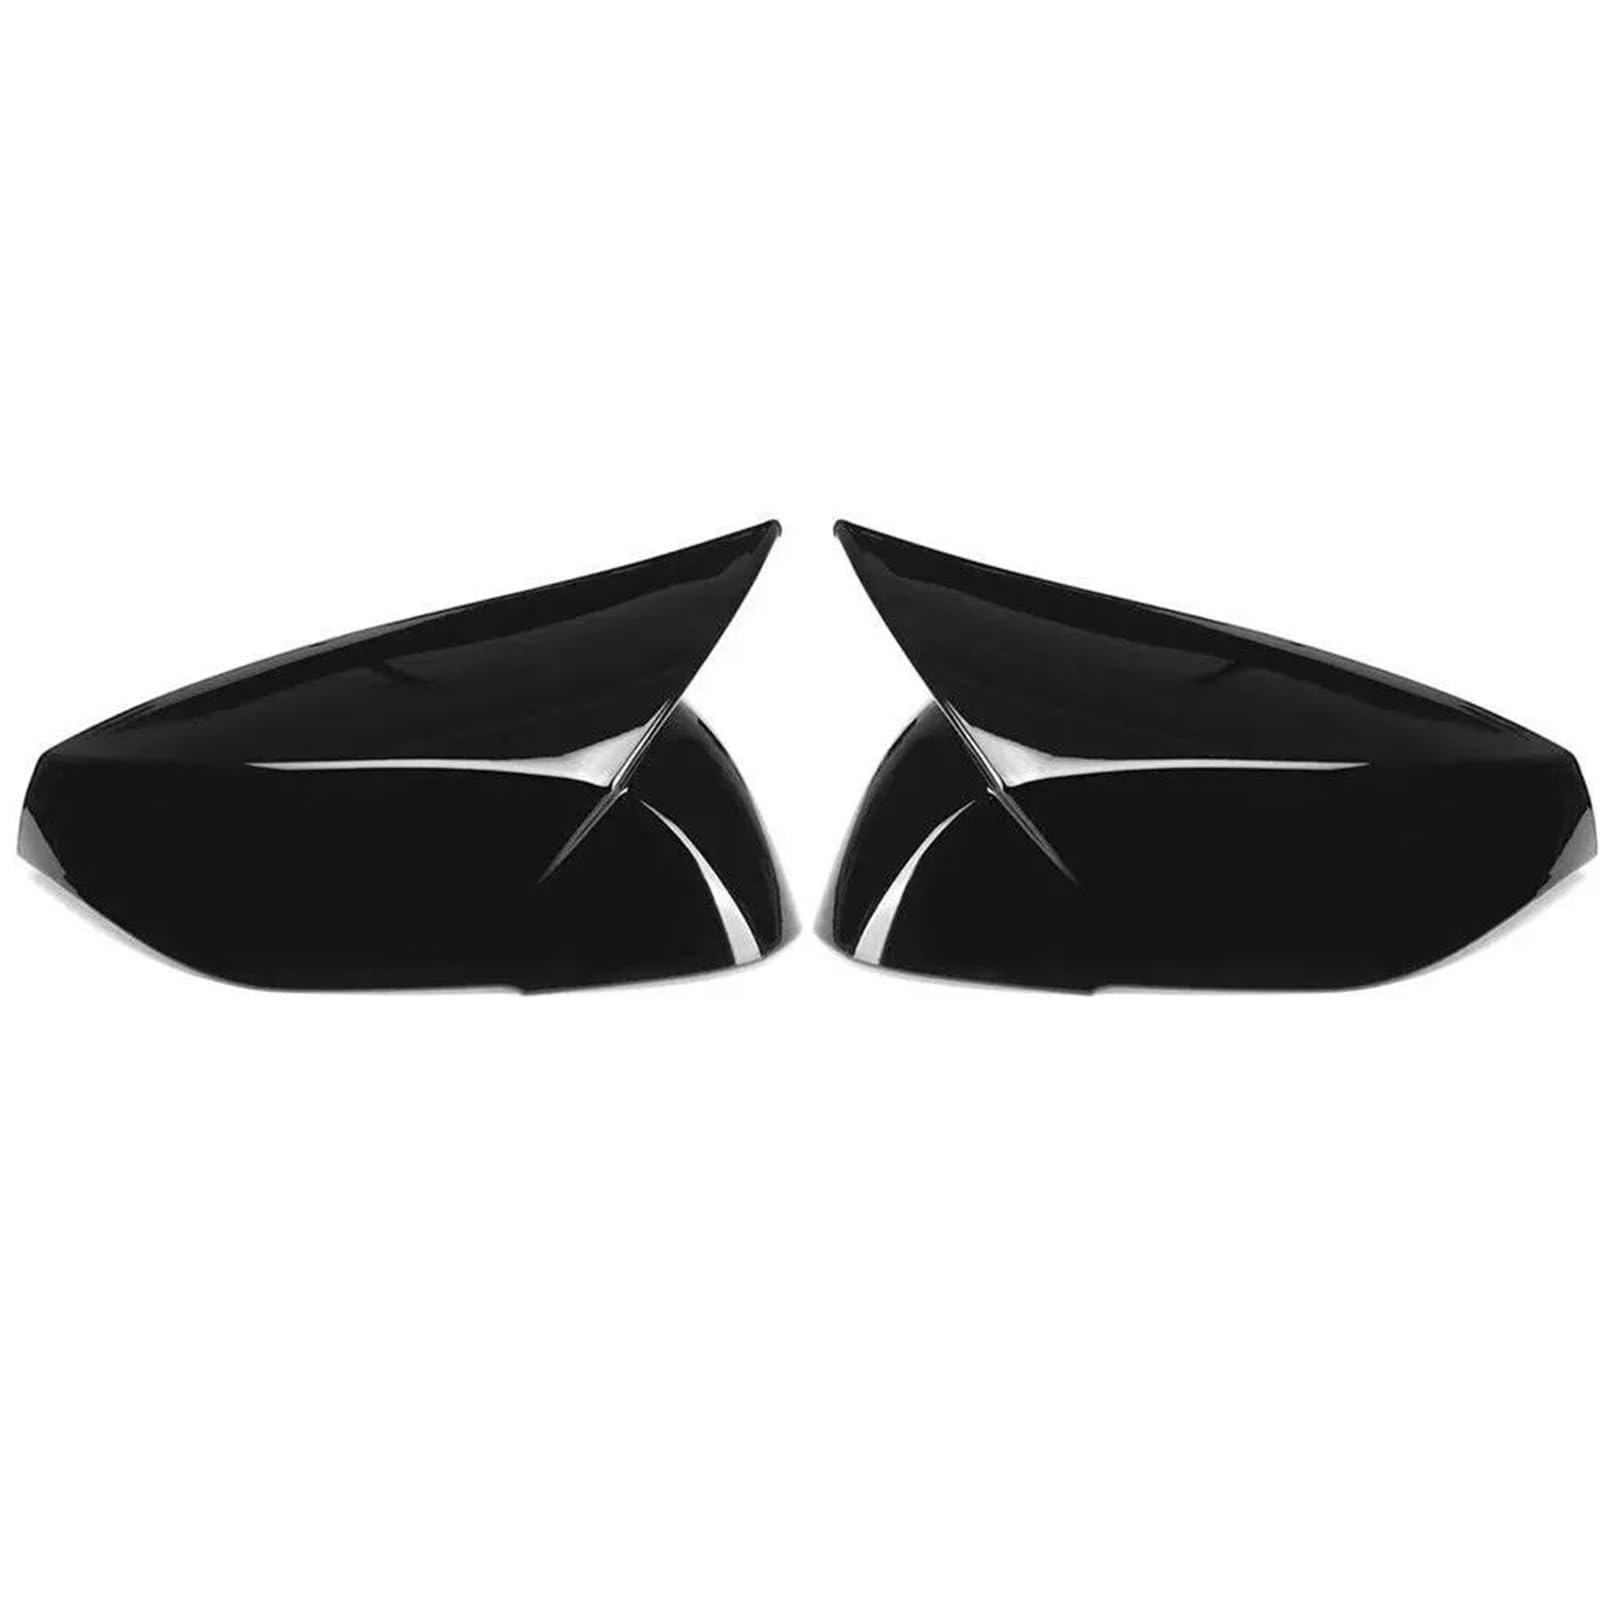 Rückspiegelkappen Für I┐nfiniti Q50 Q60 QX30 Q70 2014-2020 Rückspiegelabdeckung Seitenspiegelkappe Außentürgehäuse Verkleidungsaufkleber Kohlefaser Schwarz(Gloss Black) von DEBLAN